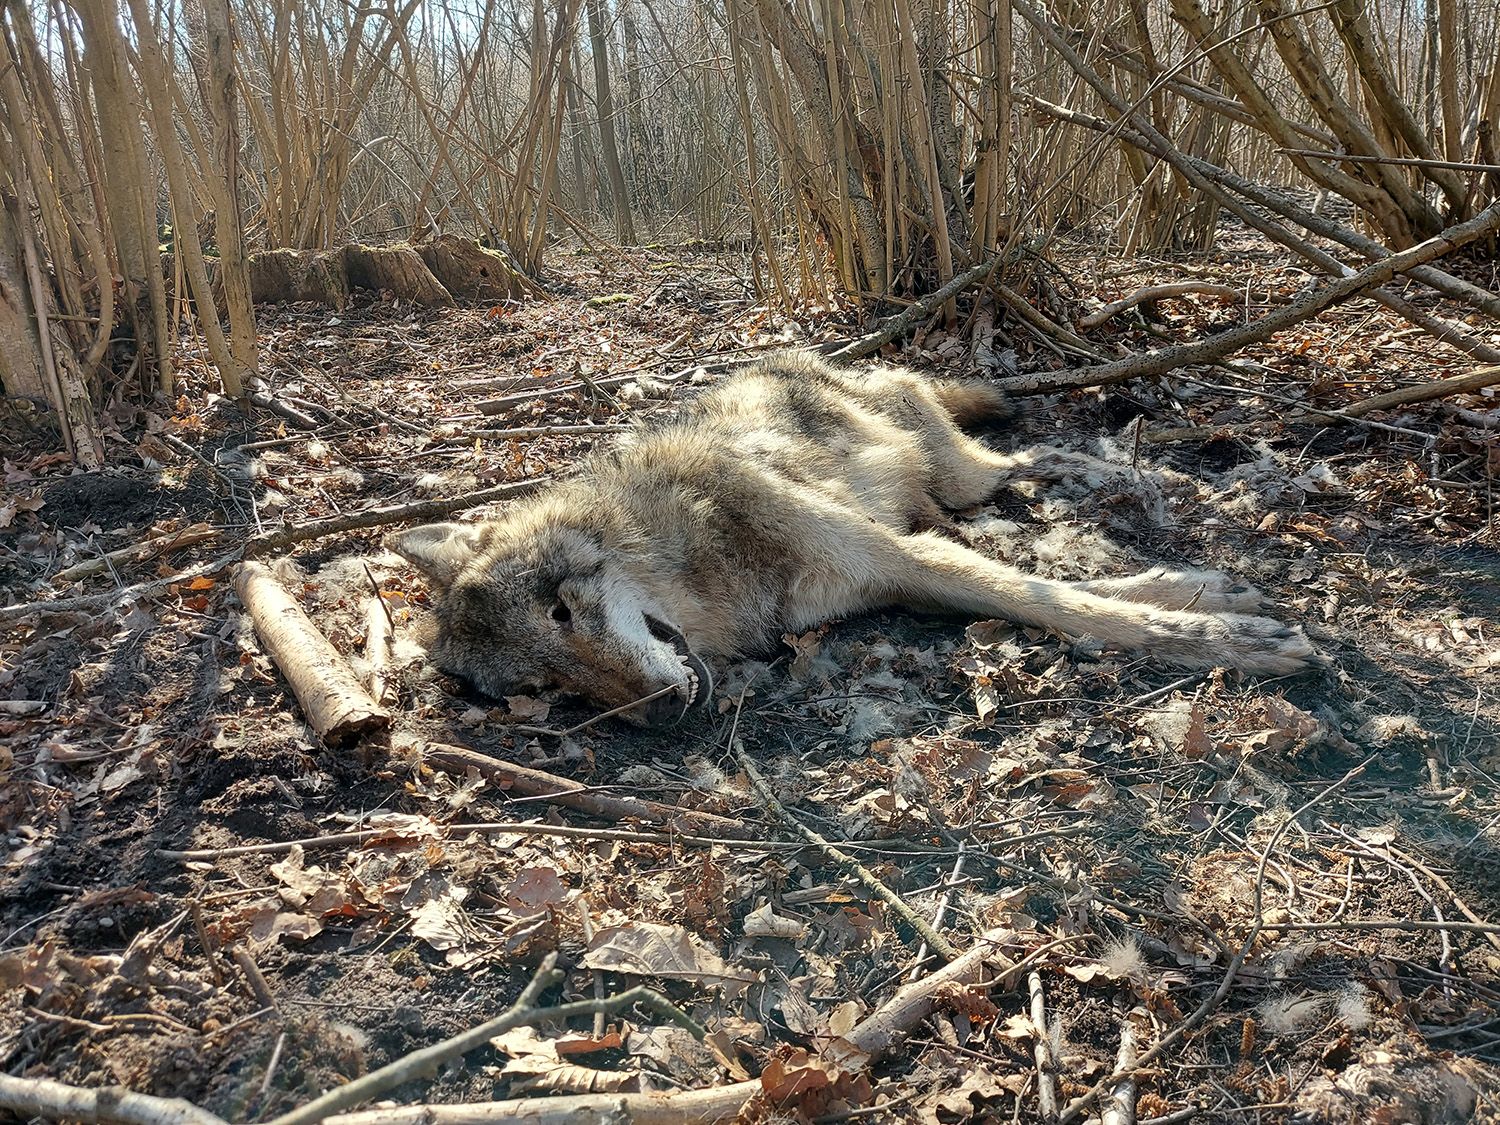 Dwuletni samiec wilka postrzelony na początku marca 2022 r. w tylną łapę w okolicach wsi Mieściska (woj. wielkopolskie). Autor S. Nowak